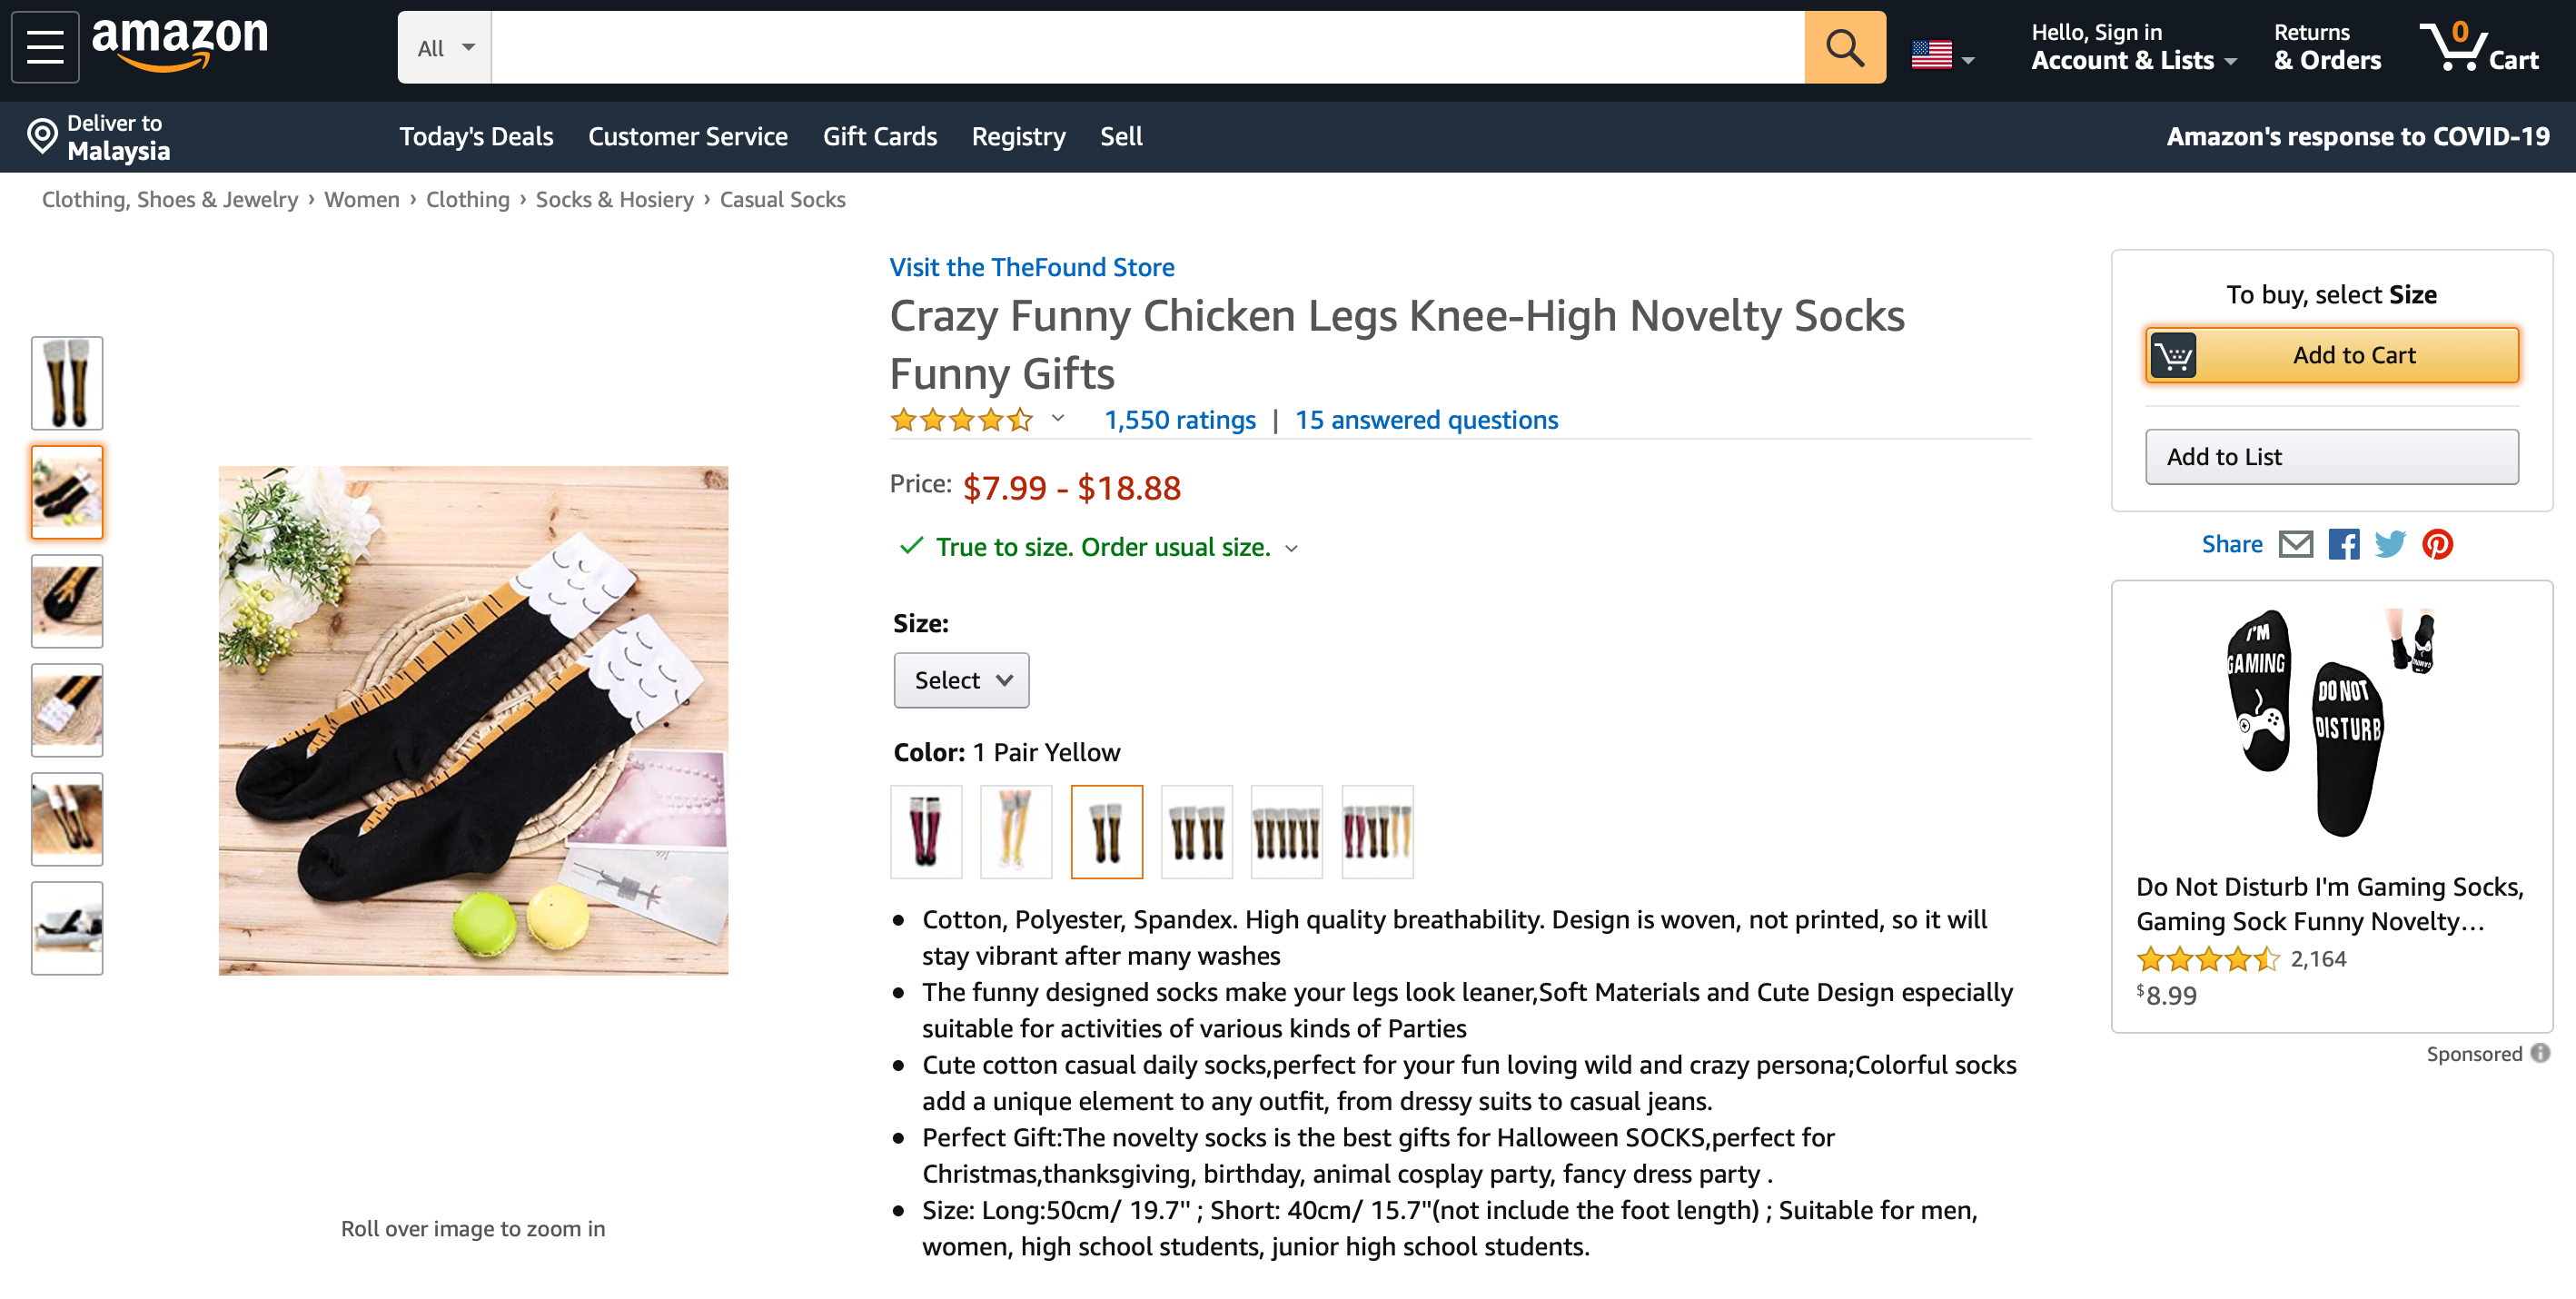 这款袜子价格介于7.99美元至18.88美元。-截图自亚马逊购物网站-